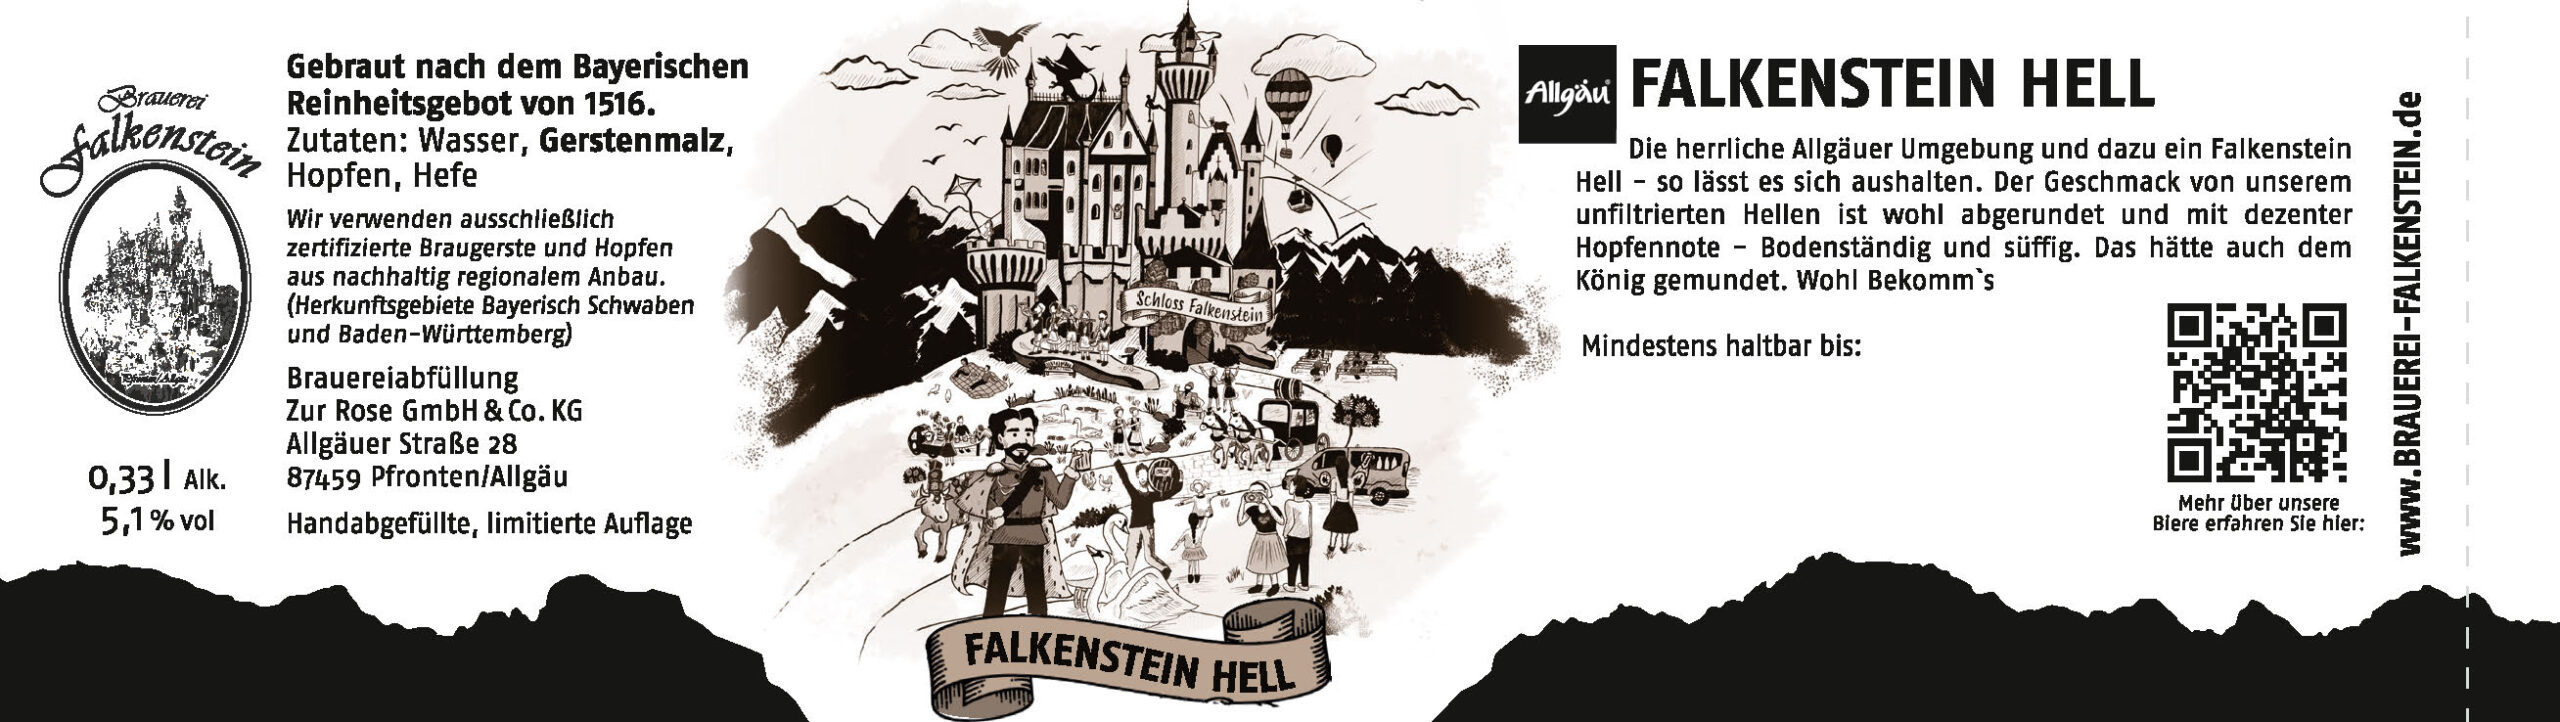 Falkenstein Hell 033l - Bild